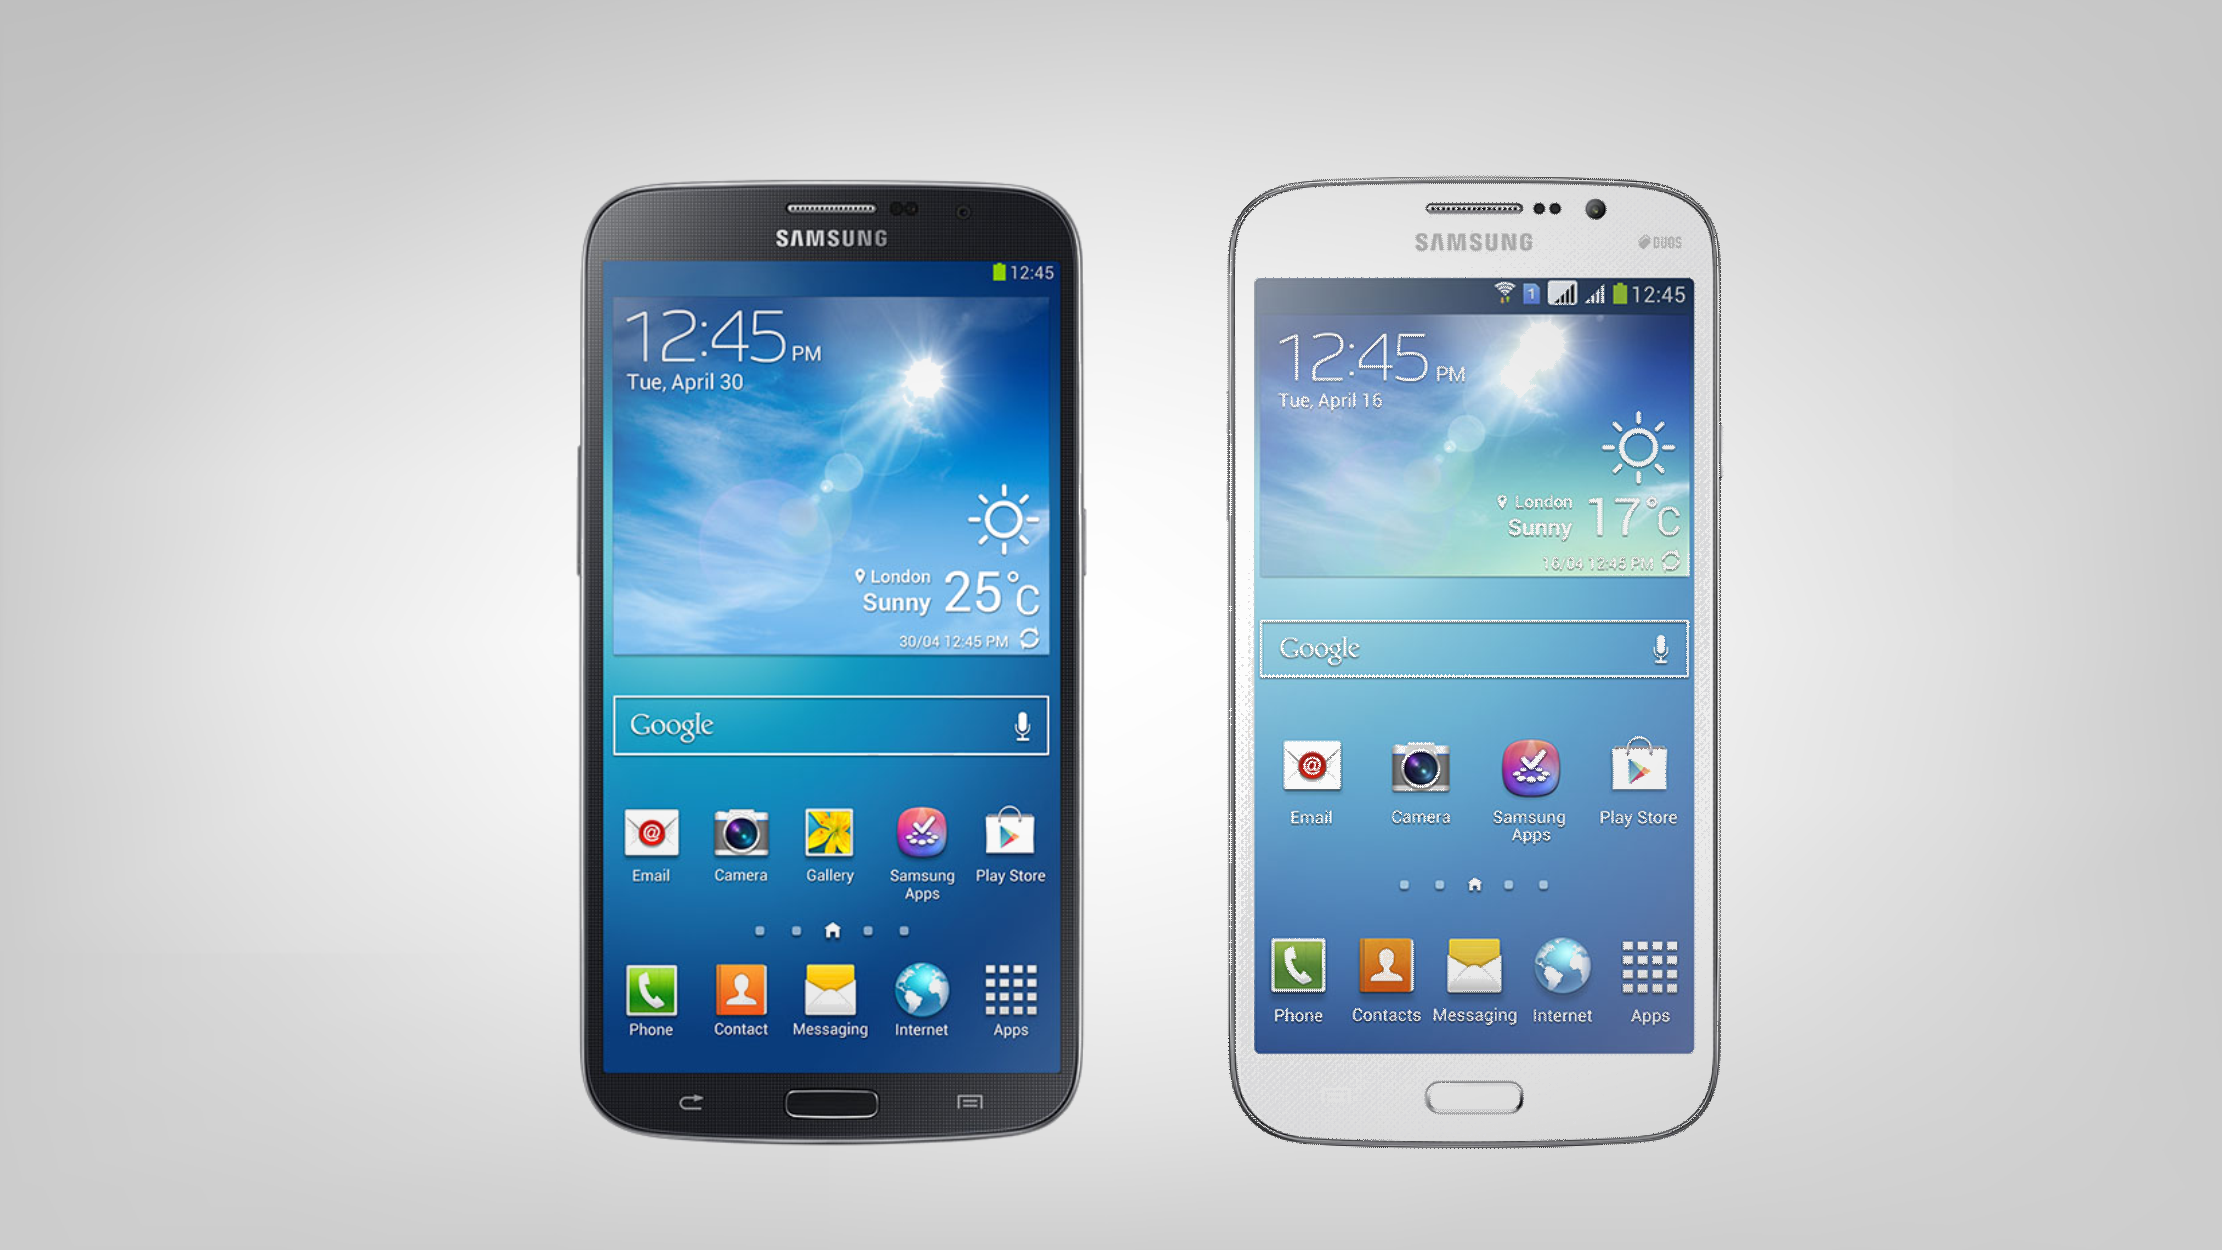 The New Samsung Galaxy Mega Wallpaper And Image